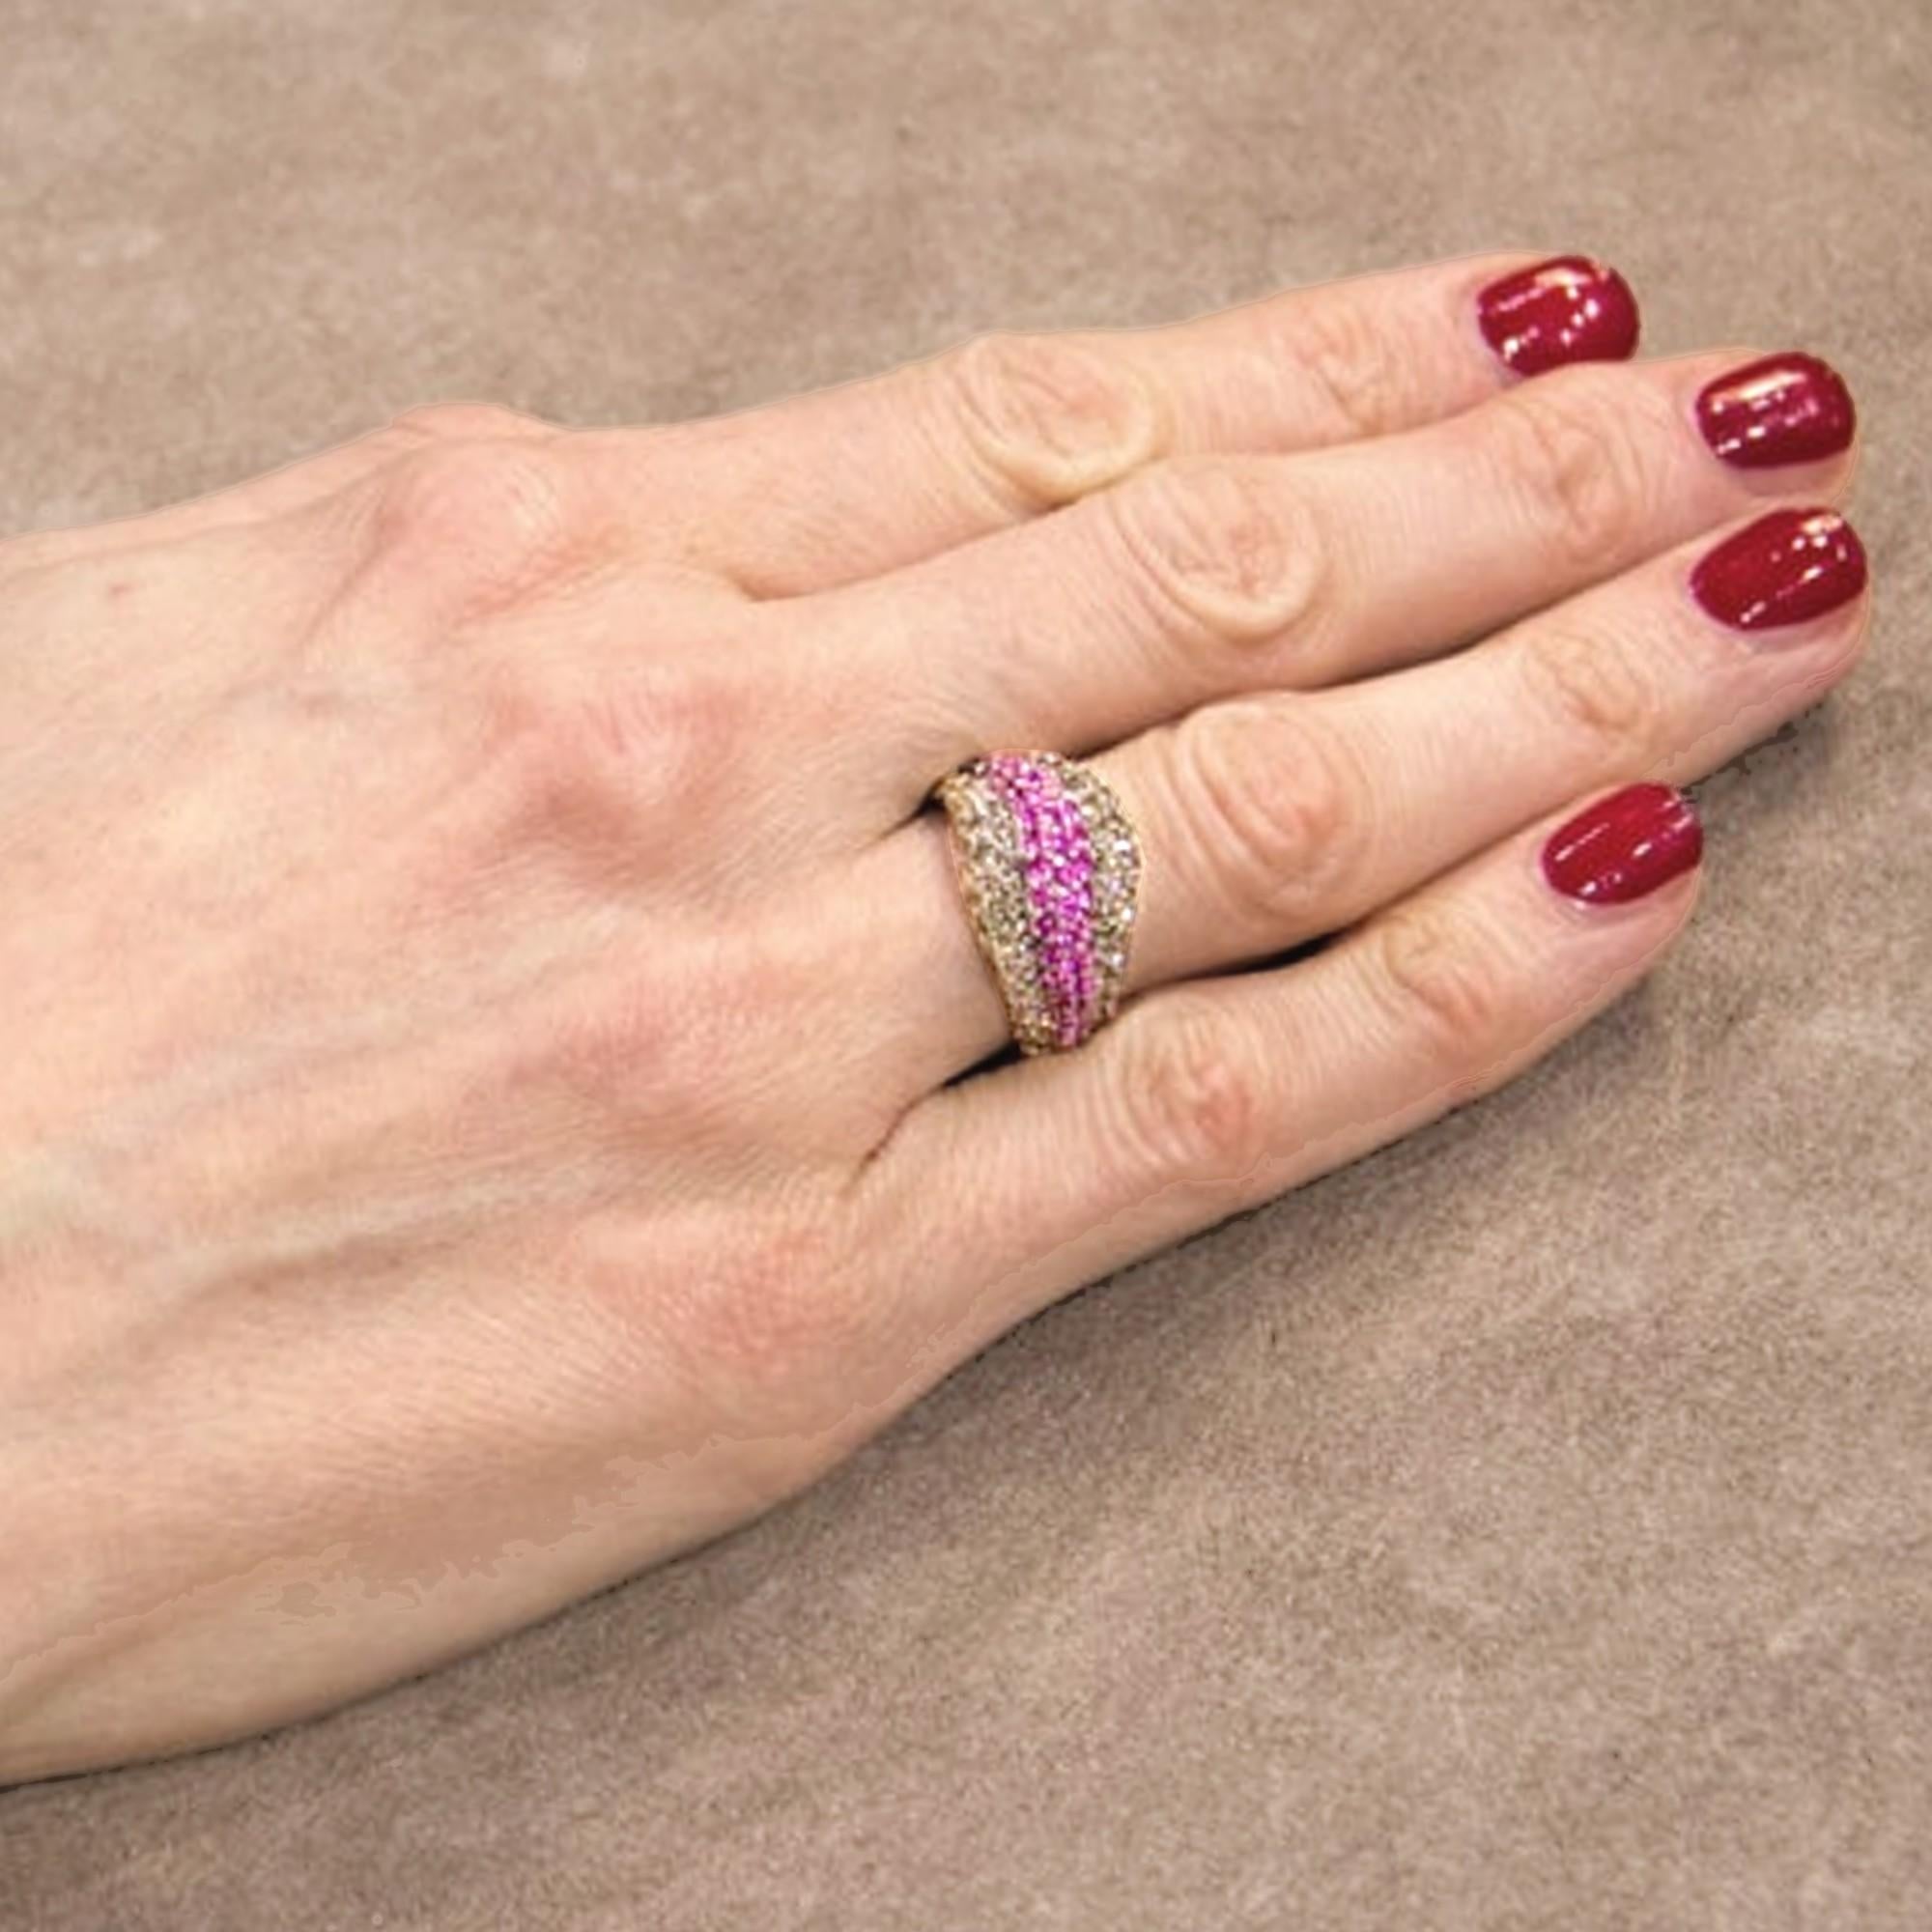 Alex Jona Design Collection, Ring mit cognacfarbenem Diamanten (1,68 Karat) und rosa Saphirpavé (1,40 Karat), gefasst in 18 Karat Weißgold. US Größe 6,5 (kann angepasst werden).

Die Juwelen von Alex Jona zeichnen sich nicht nur durch ihr besonderes